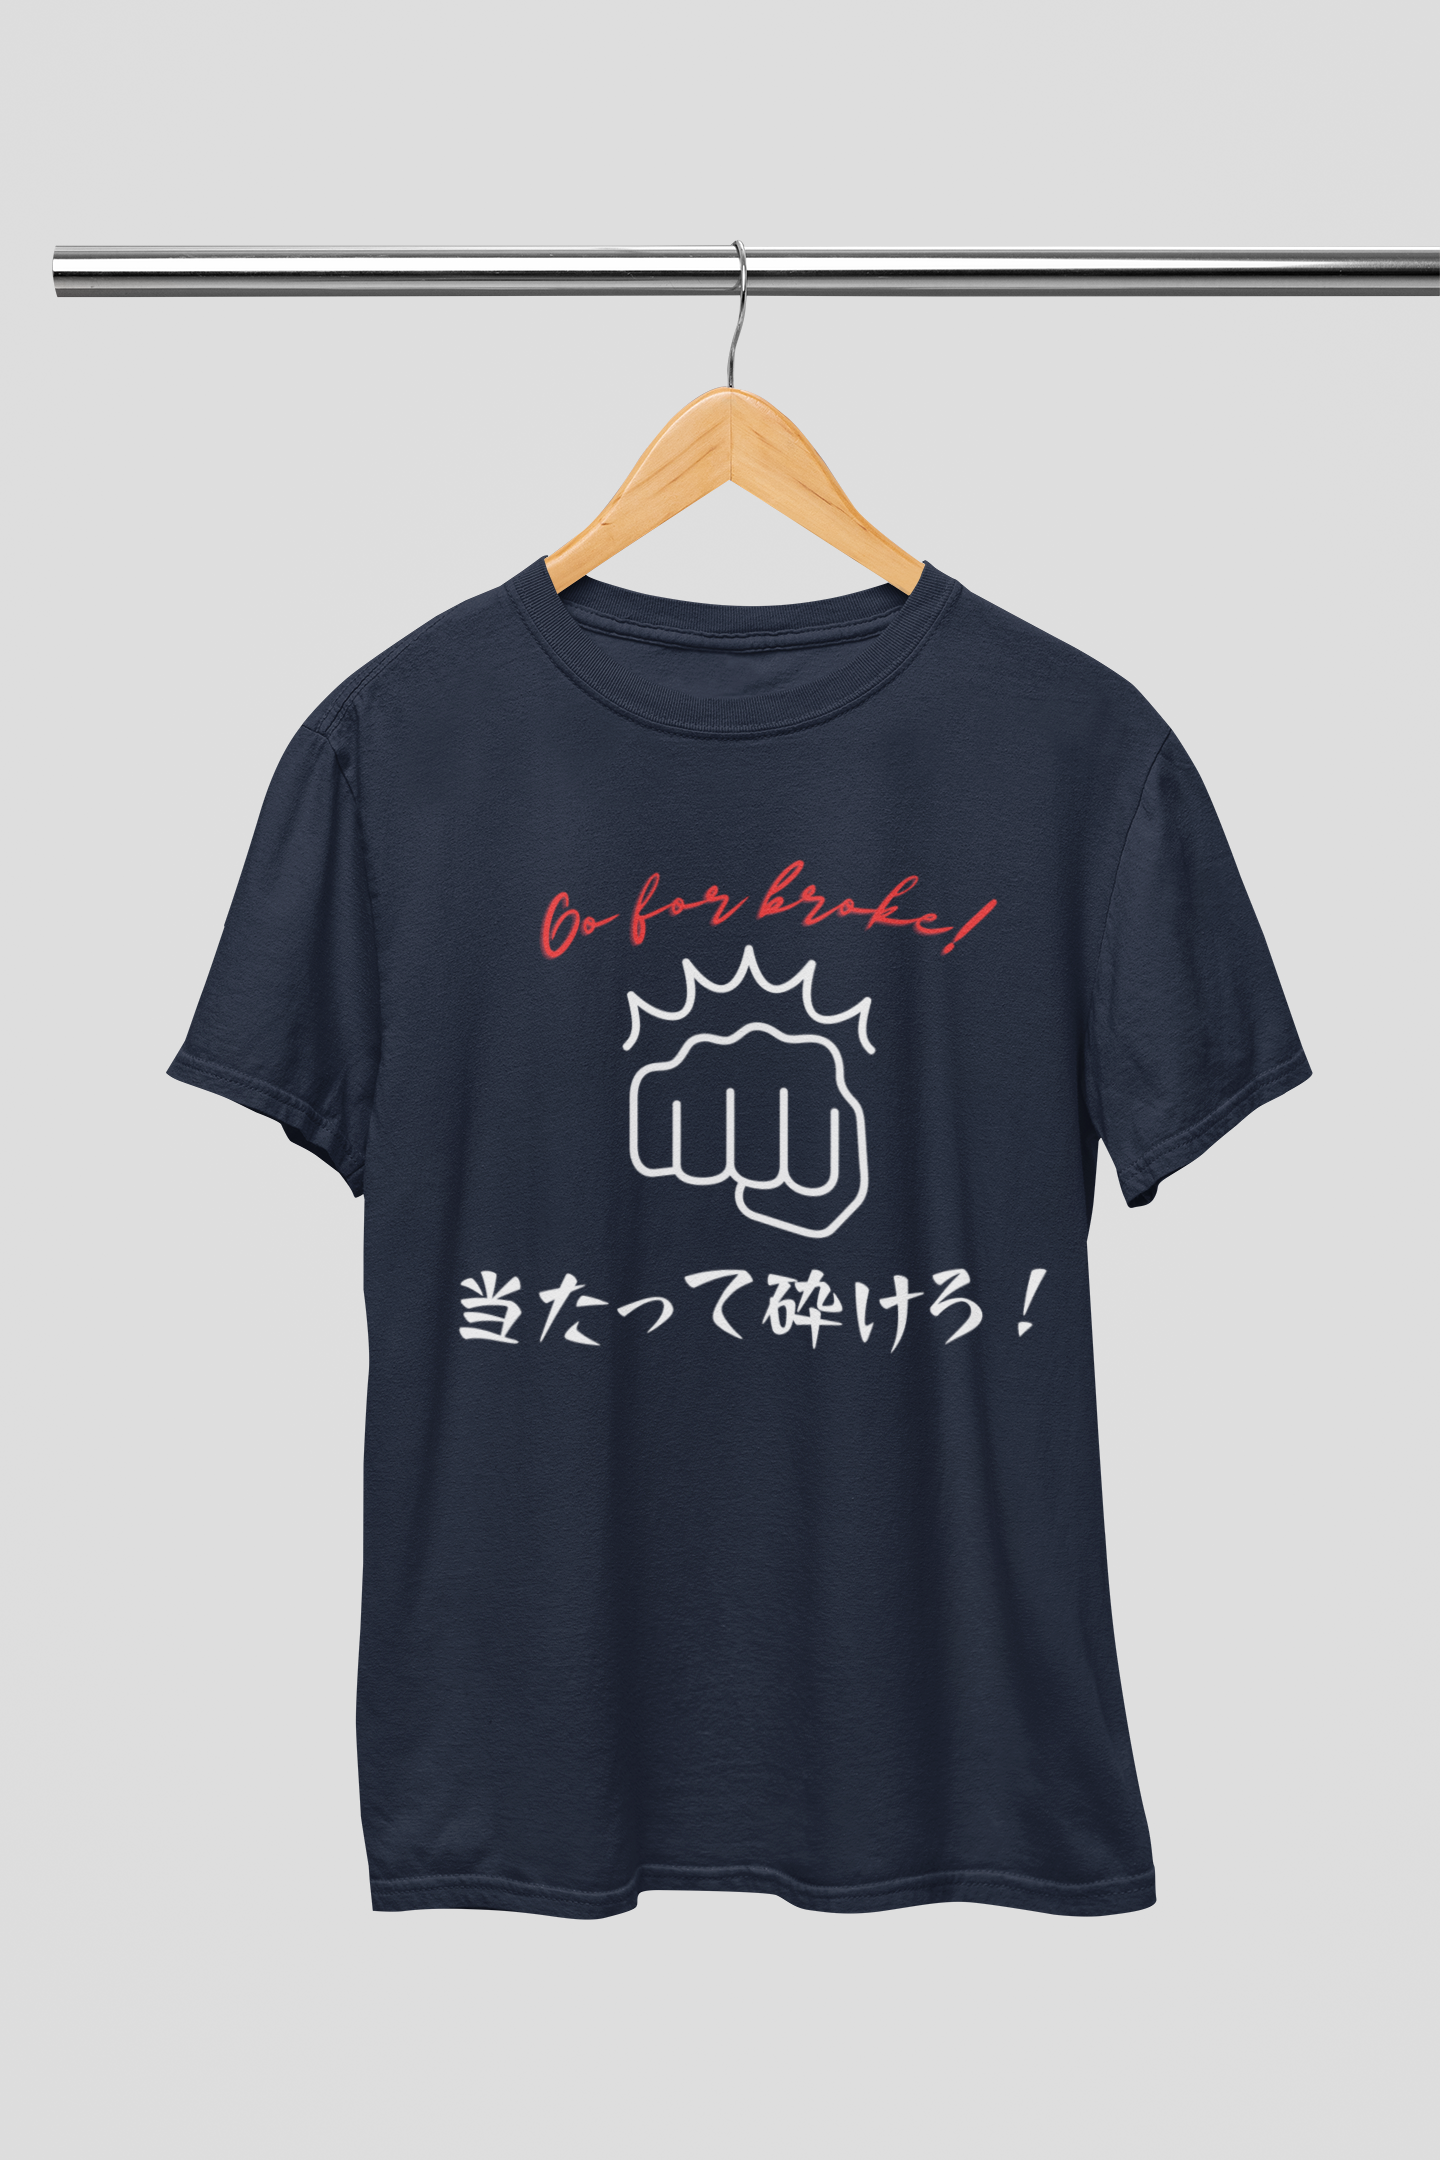 "Go for broke!" - Japanese Phrase T-shirt - YUME